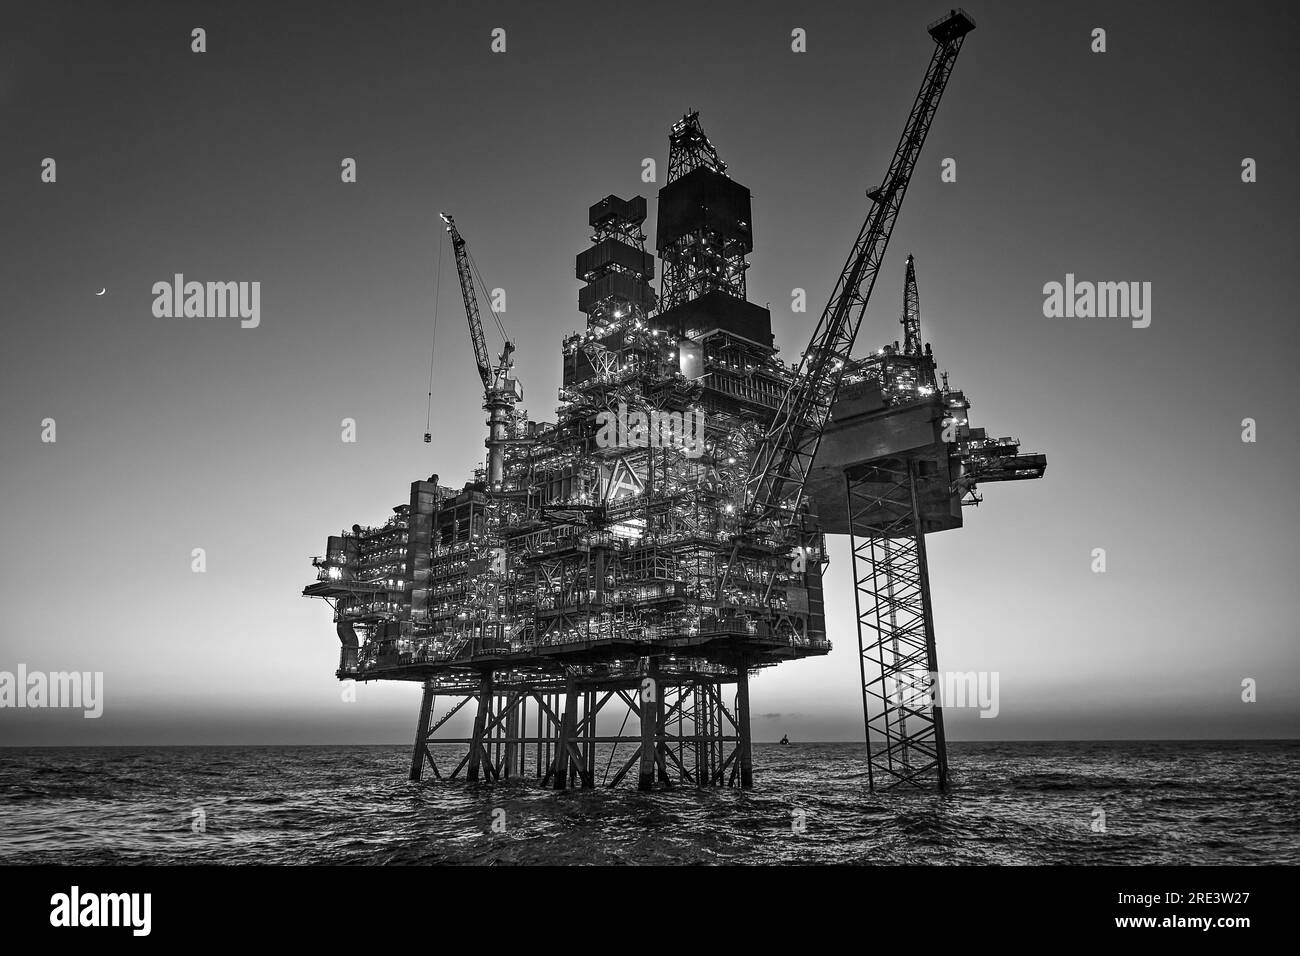 Photo noir et blanc d'une plate-forme pétrolière Jack up dans la mer au coucher du soleil. Banque D'Images